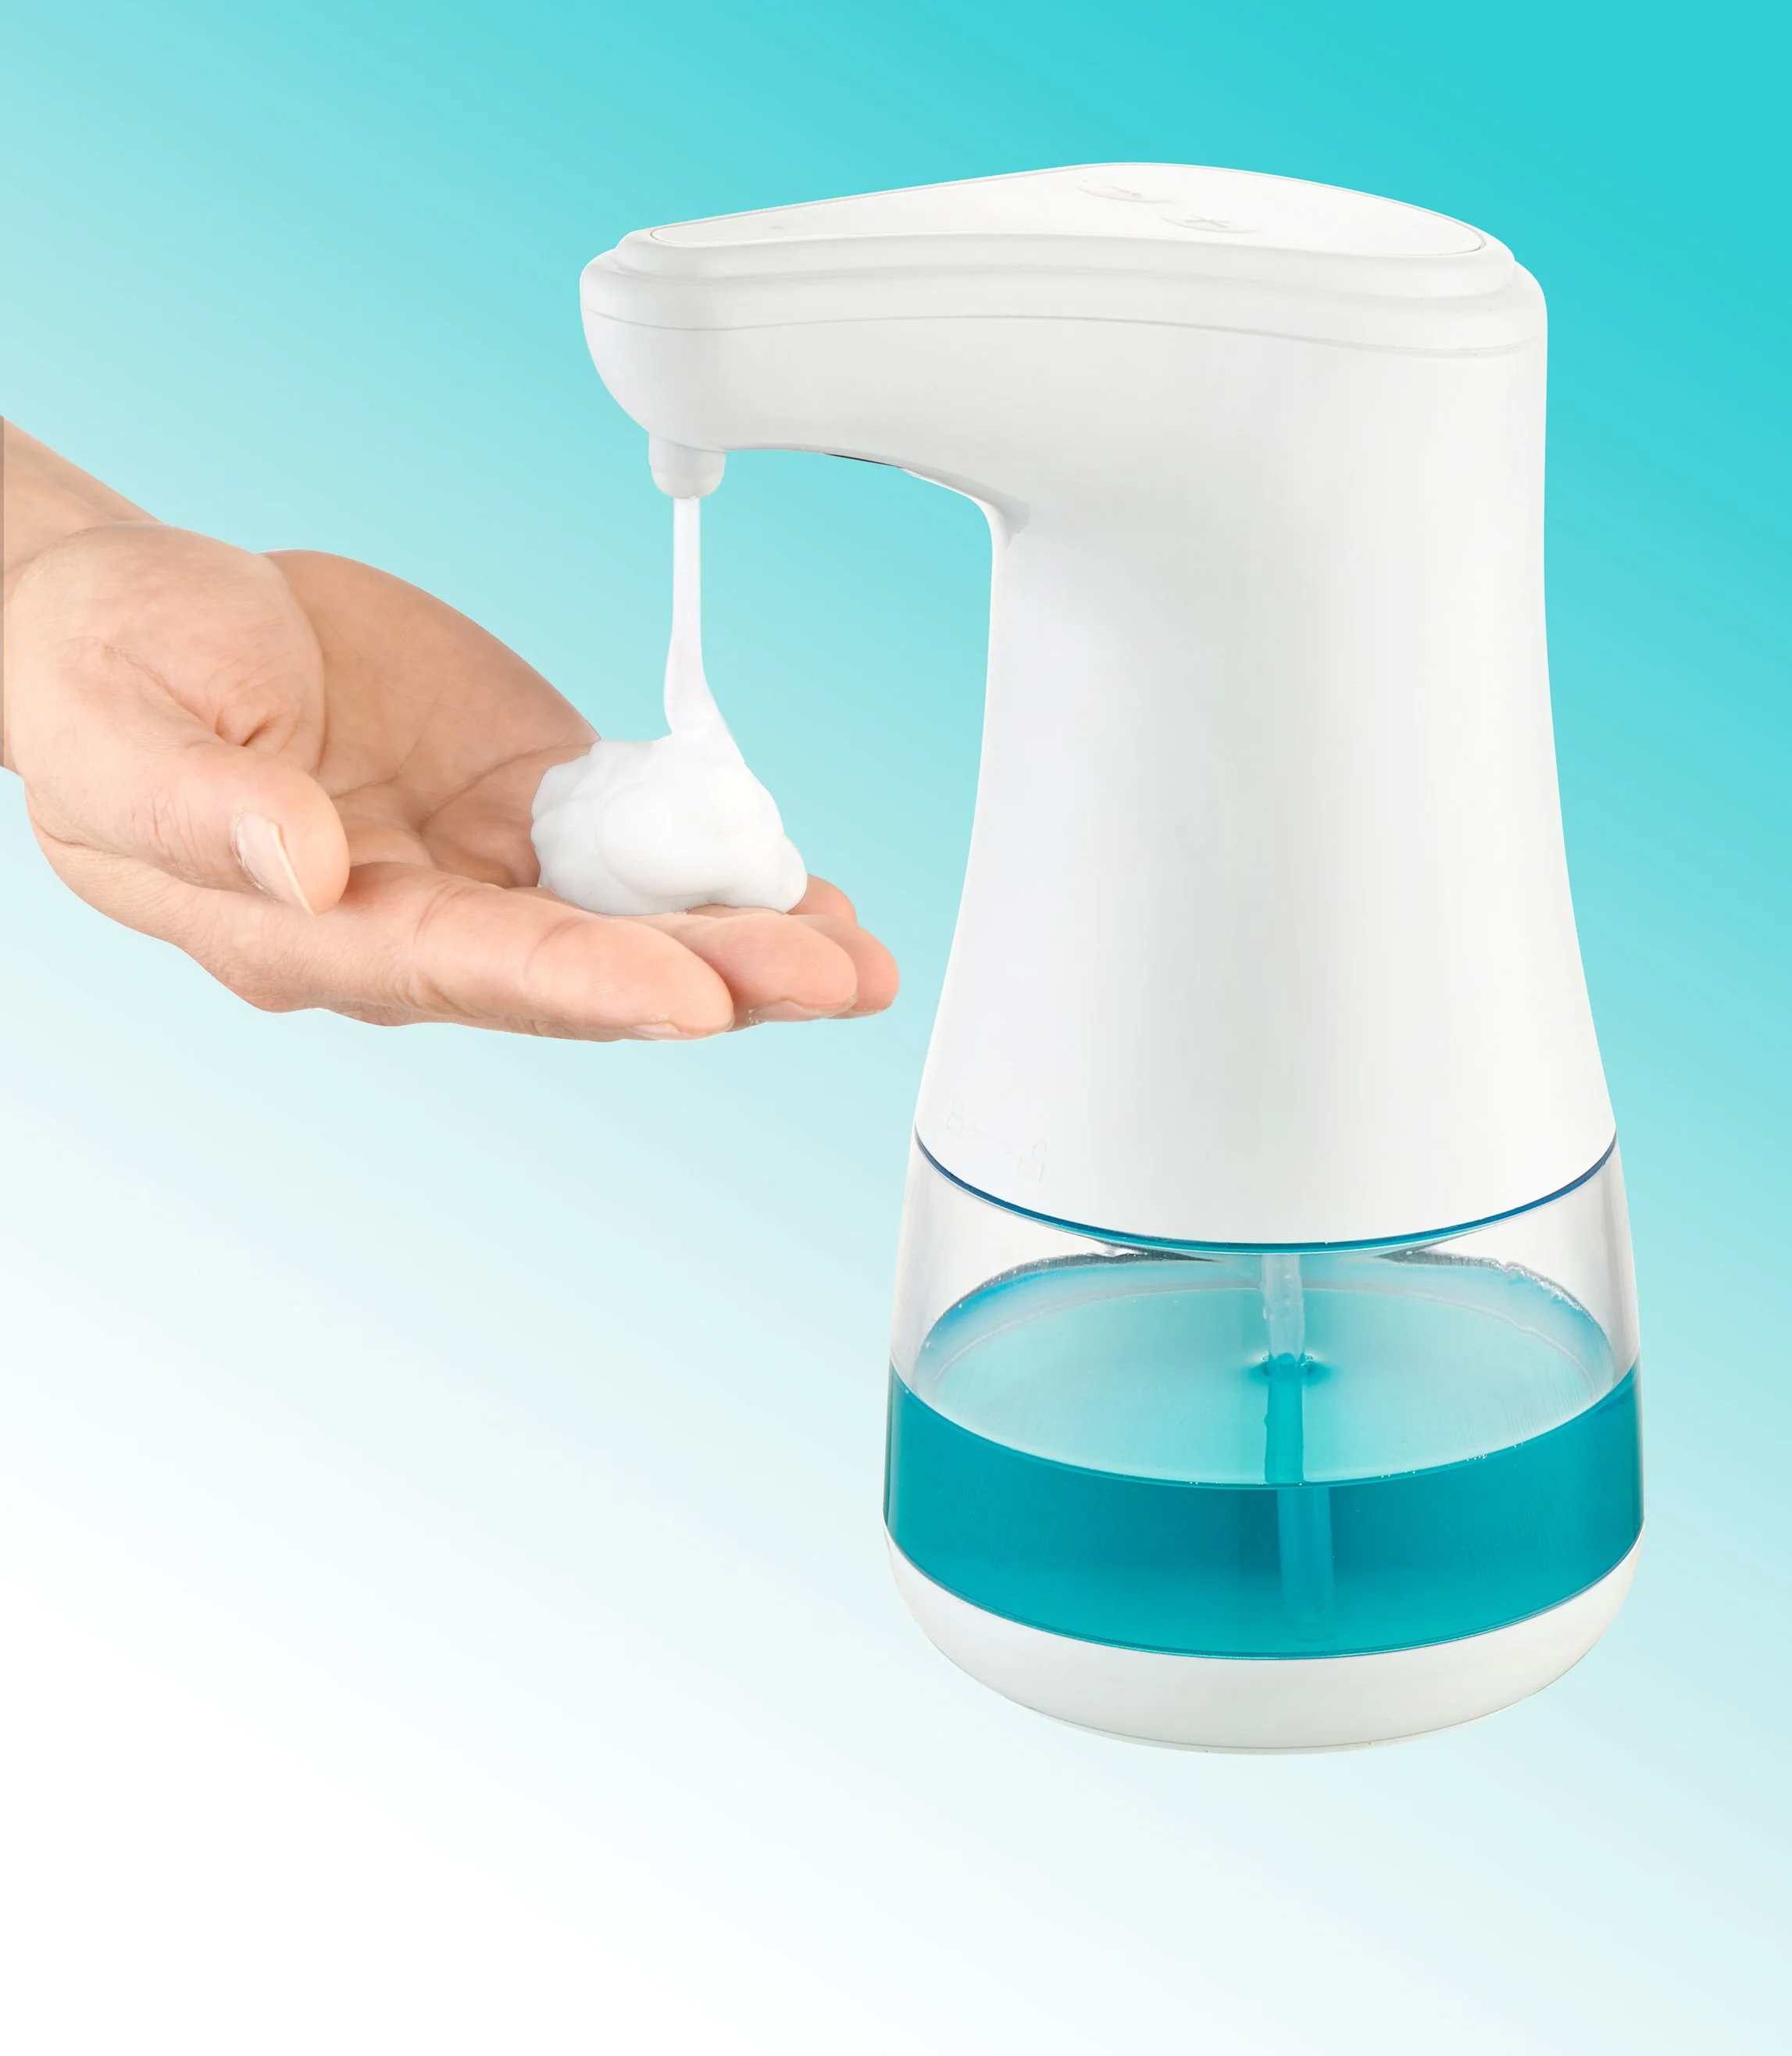 Automatic Soap Dispenser, Hand Sanitizer Dispenser, Desktop Touchless Fy-0080